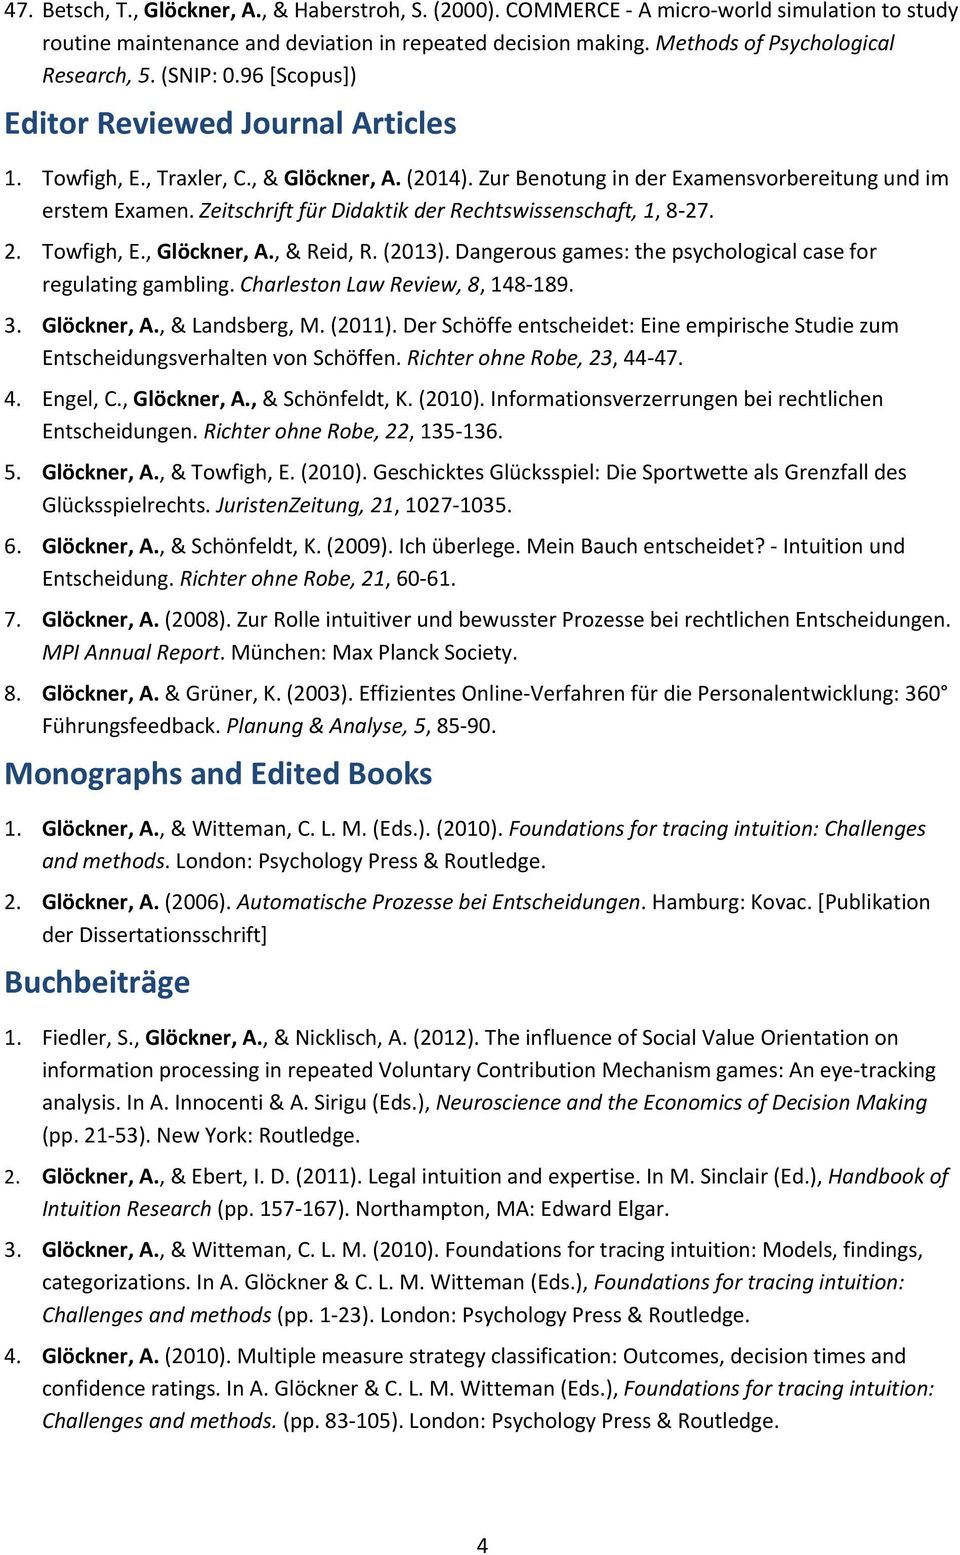 Zeitschrift für Didaktik der Rechtswissenschaft, 1, 8 27. 2. Towfigh, E., Glöckner, A., & Reid, R. (2013). Dangerous games: the psychological case for regulating gambling.